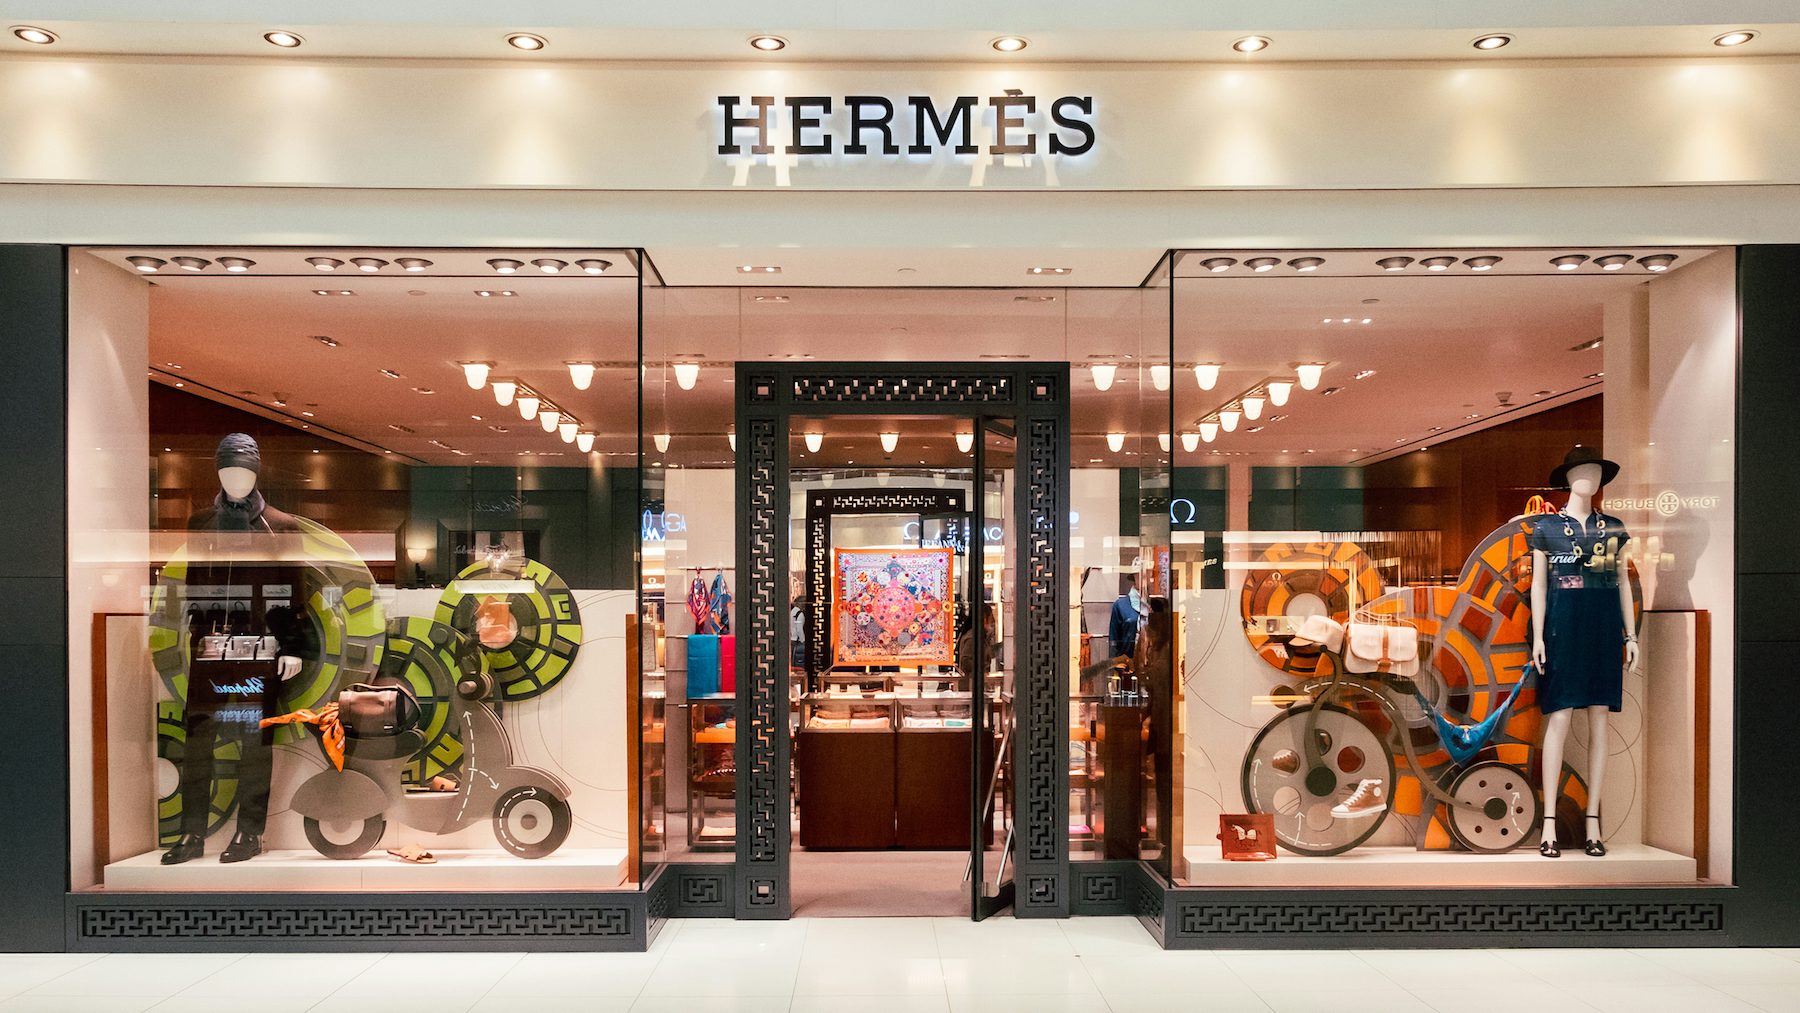 hermes fashion brand